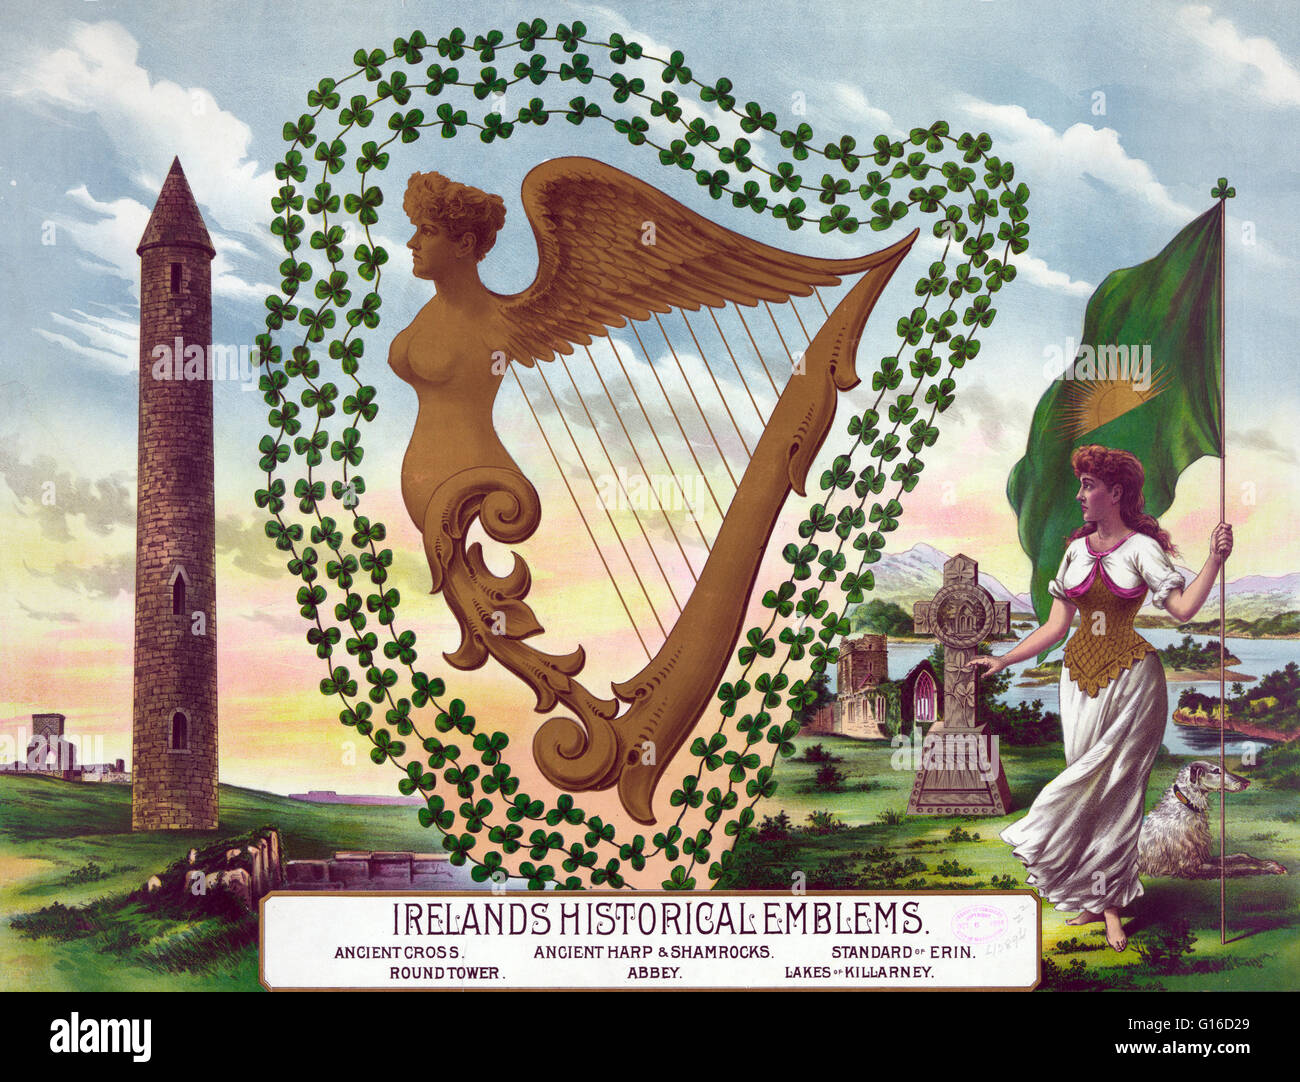 Lithographie de l'Irlande par les emblèmes historiques de la société Eagle, 1894 Lithographie. Croix ancienne harpe ancienne, et des trèfles, standard d'Erin, roundtower, abbaye, lacs de Killarney. La croix celtique est un symbole qui combine une croix avec un anneau surroundin Banque D'Images